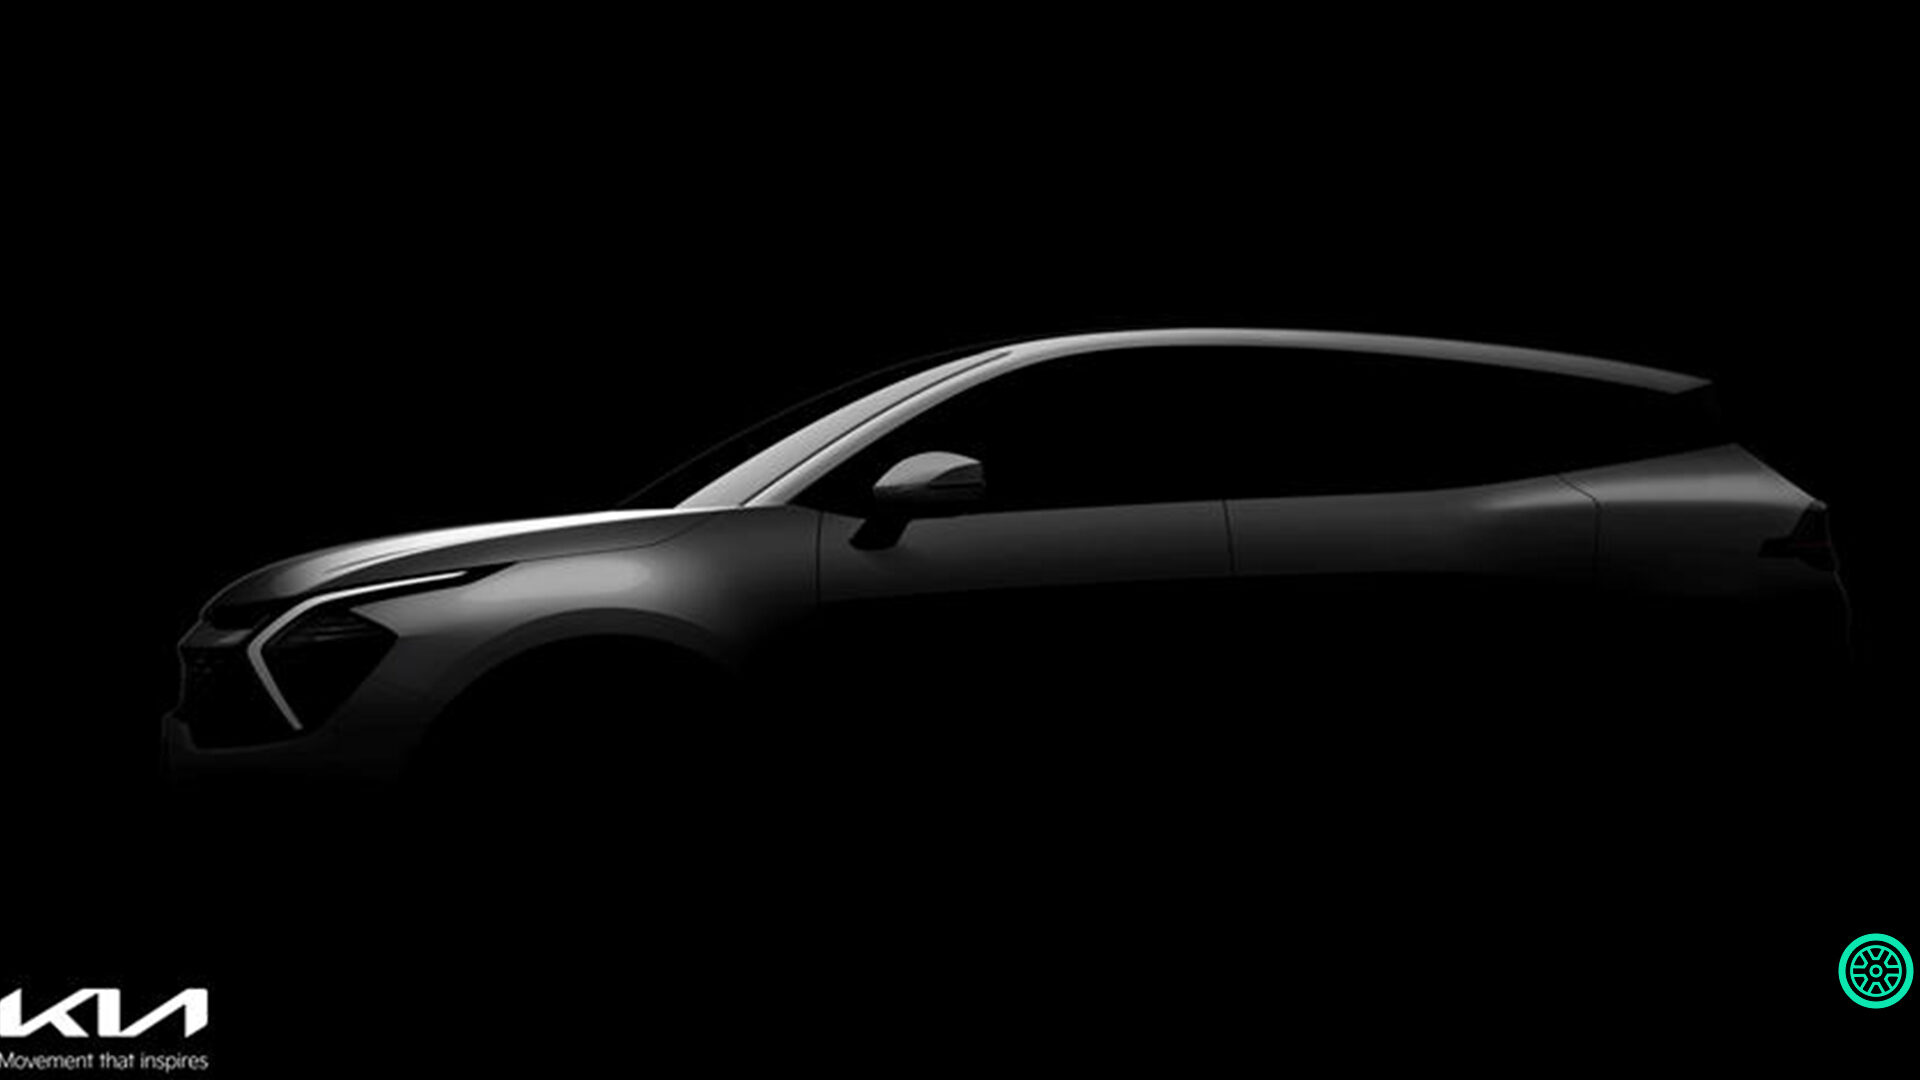 2022 Kia Sportage SUV teaser görüntüleri paylaşıldı 1